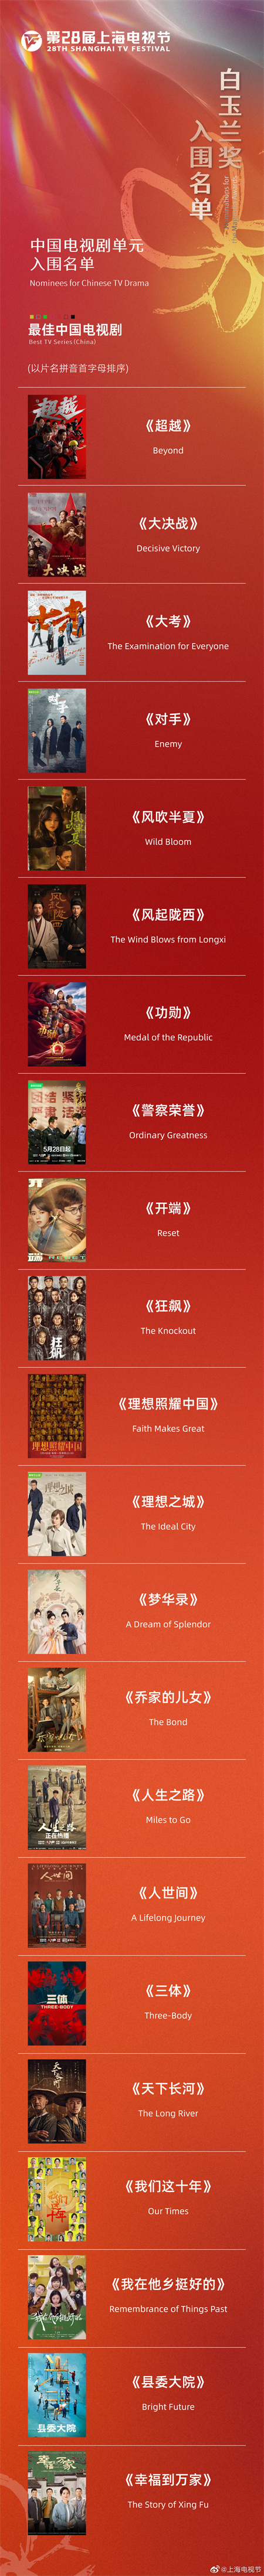 第28届上海电视节白玉兰奖入围名单揭晓 《人世间》《狂飙》等角逐最佳中国电视剧